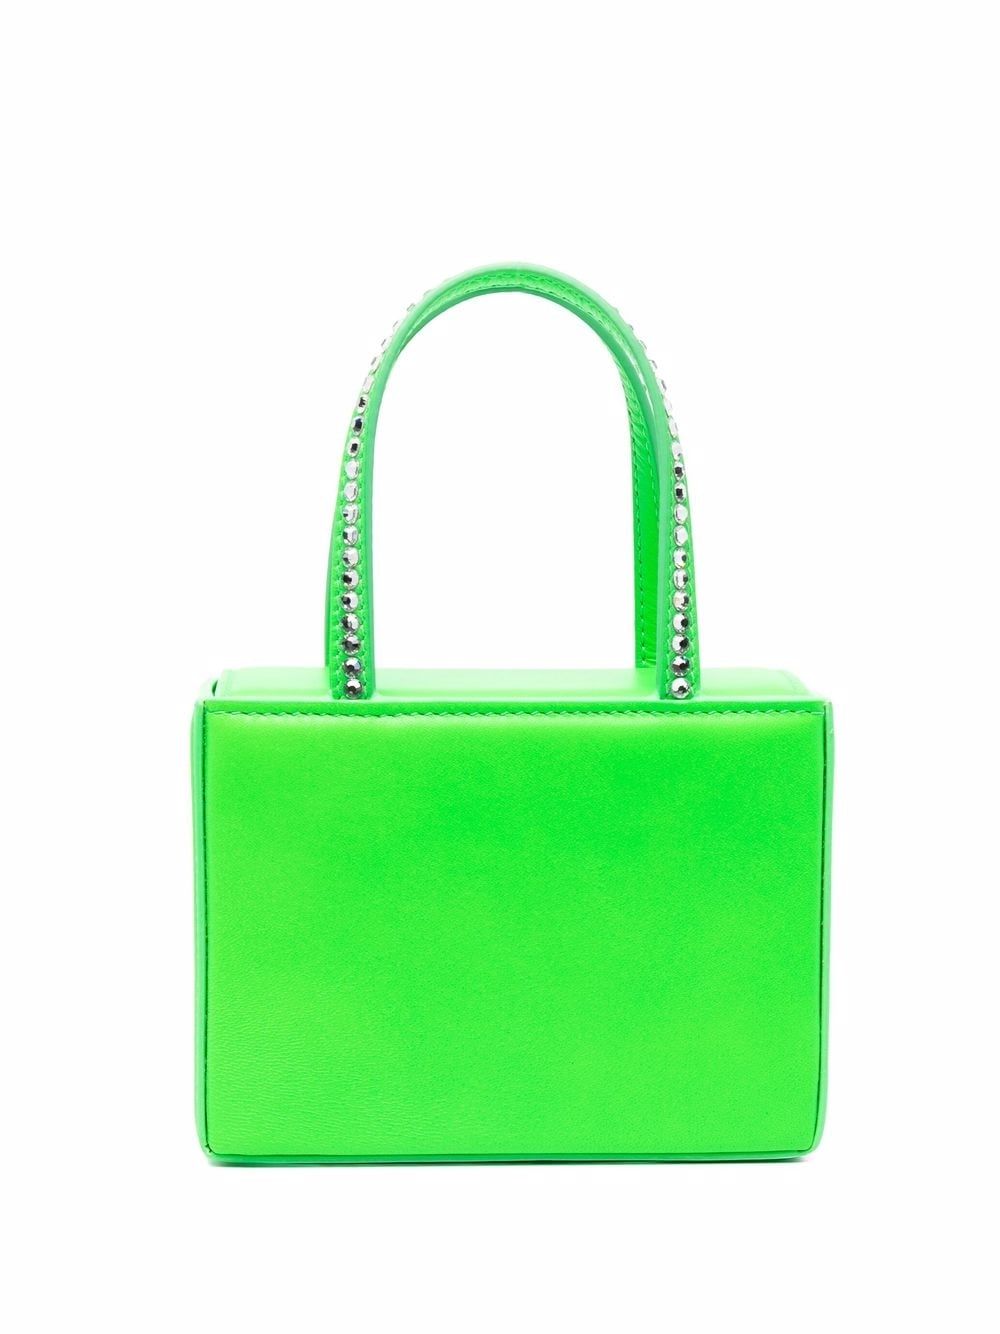 Amina Muaddi Green Crystal Embellished Mini Bag - Farfetch | Farfetch Global